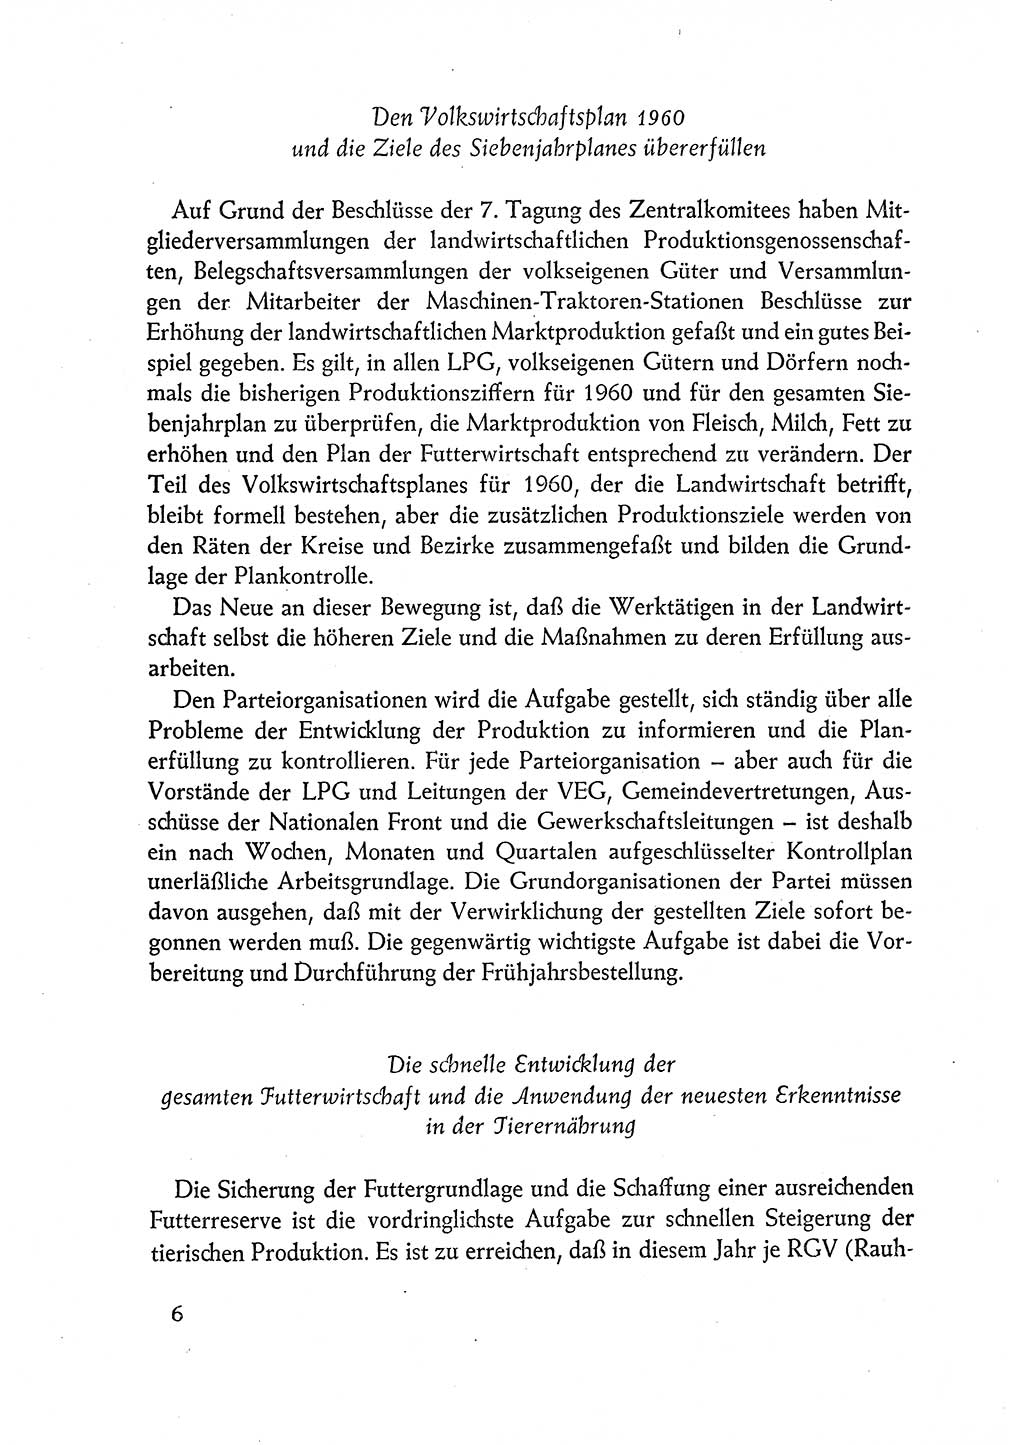 Dokumente der Sozialistischen Einheitspartei Deutschlands (SED) [Deutsche Demokratische Republik (DDR)] 1960-1961, Seite 6 (Dok. SED DDR 1960-1961, S. 6)